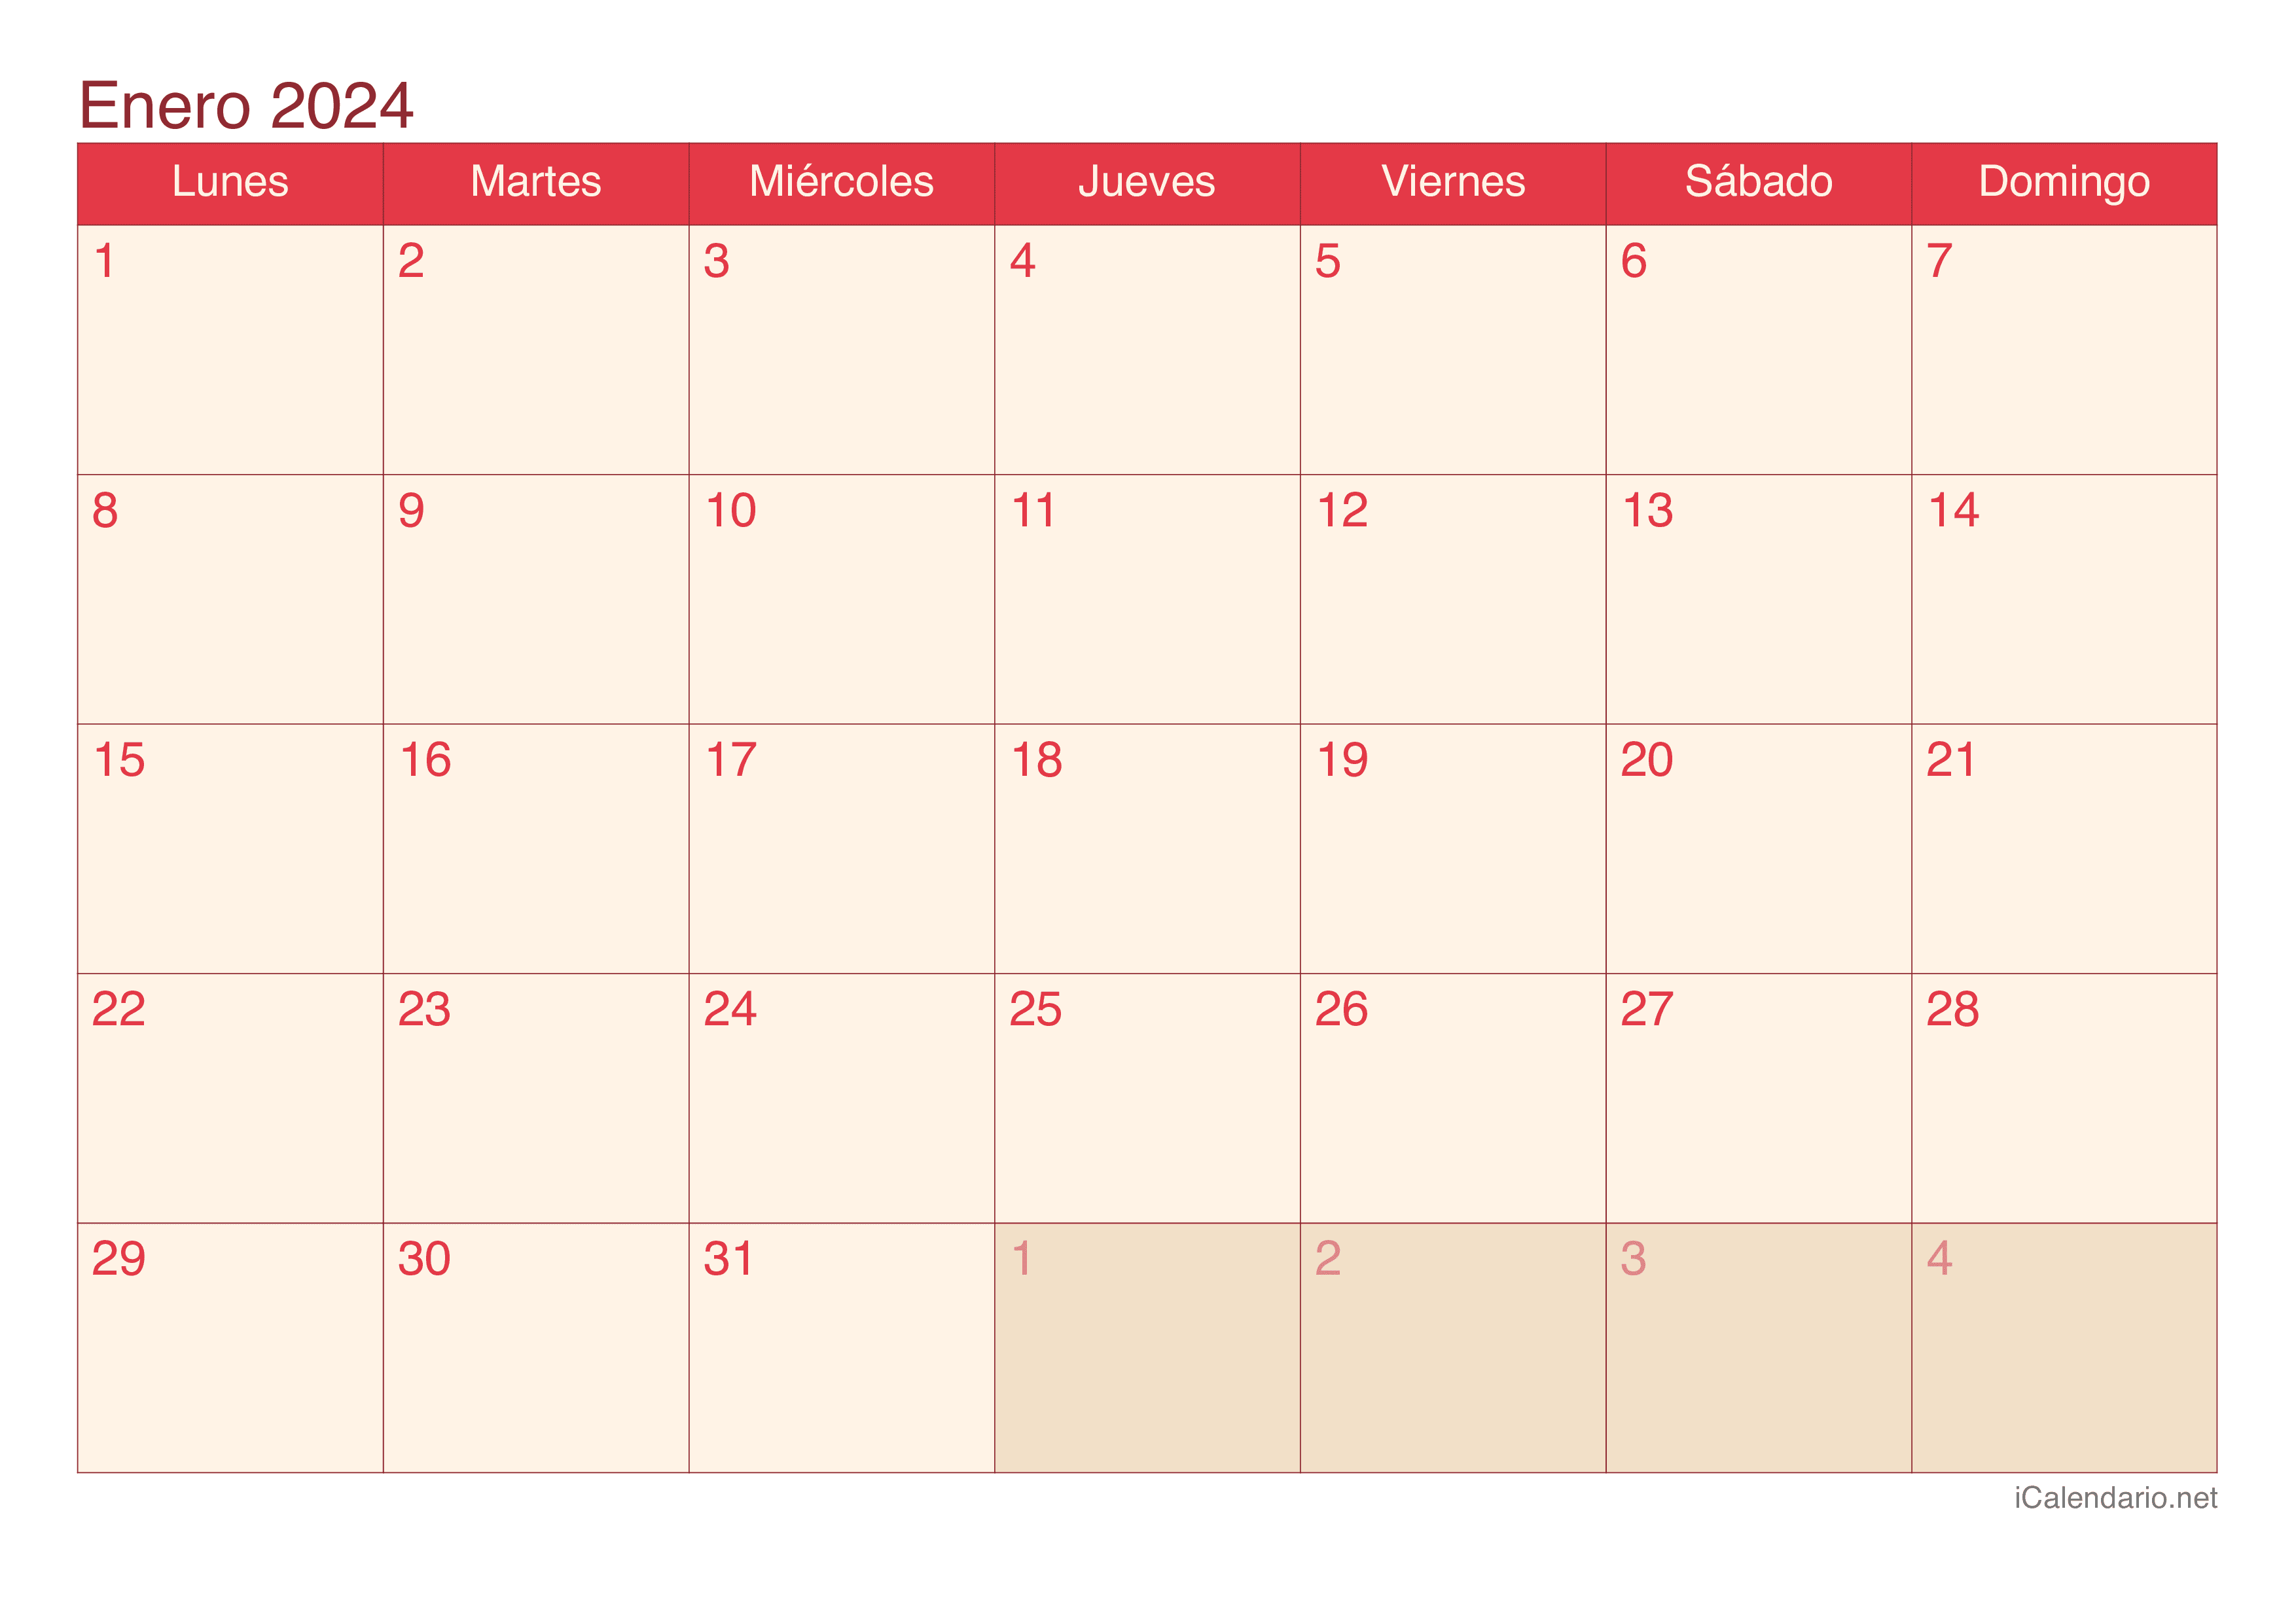 Calendario de enero 2024 - Cherry